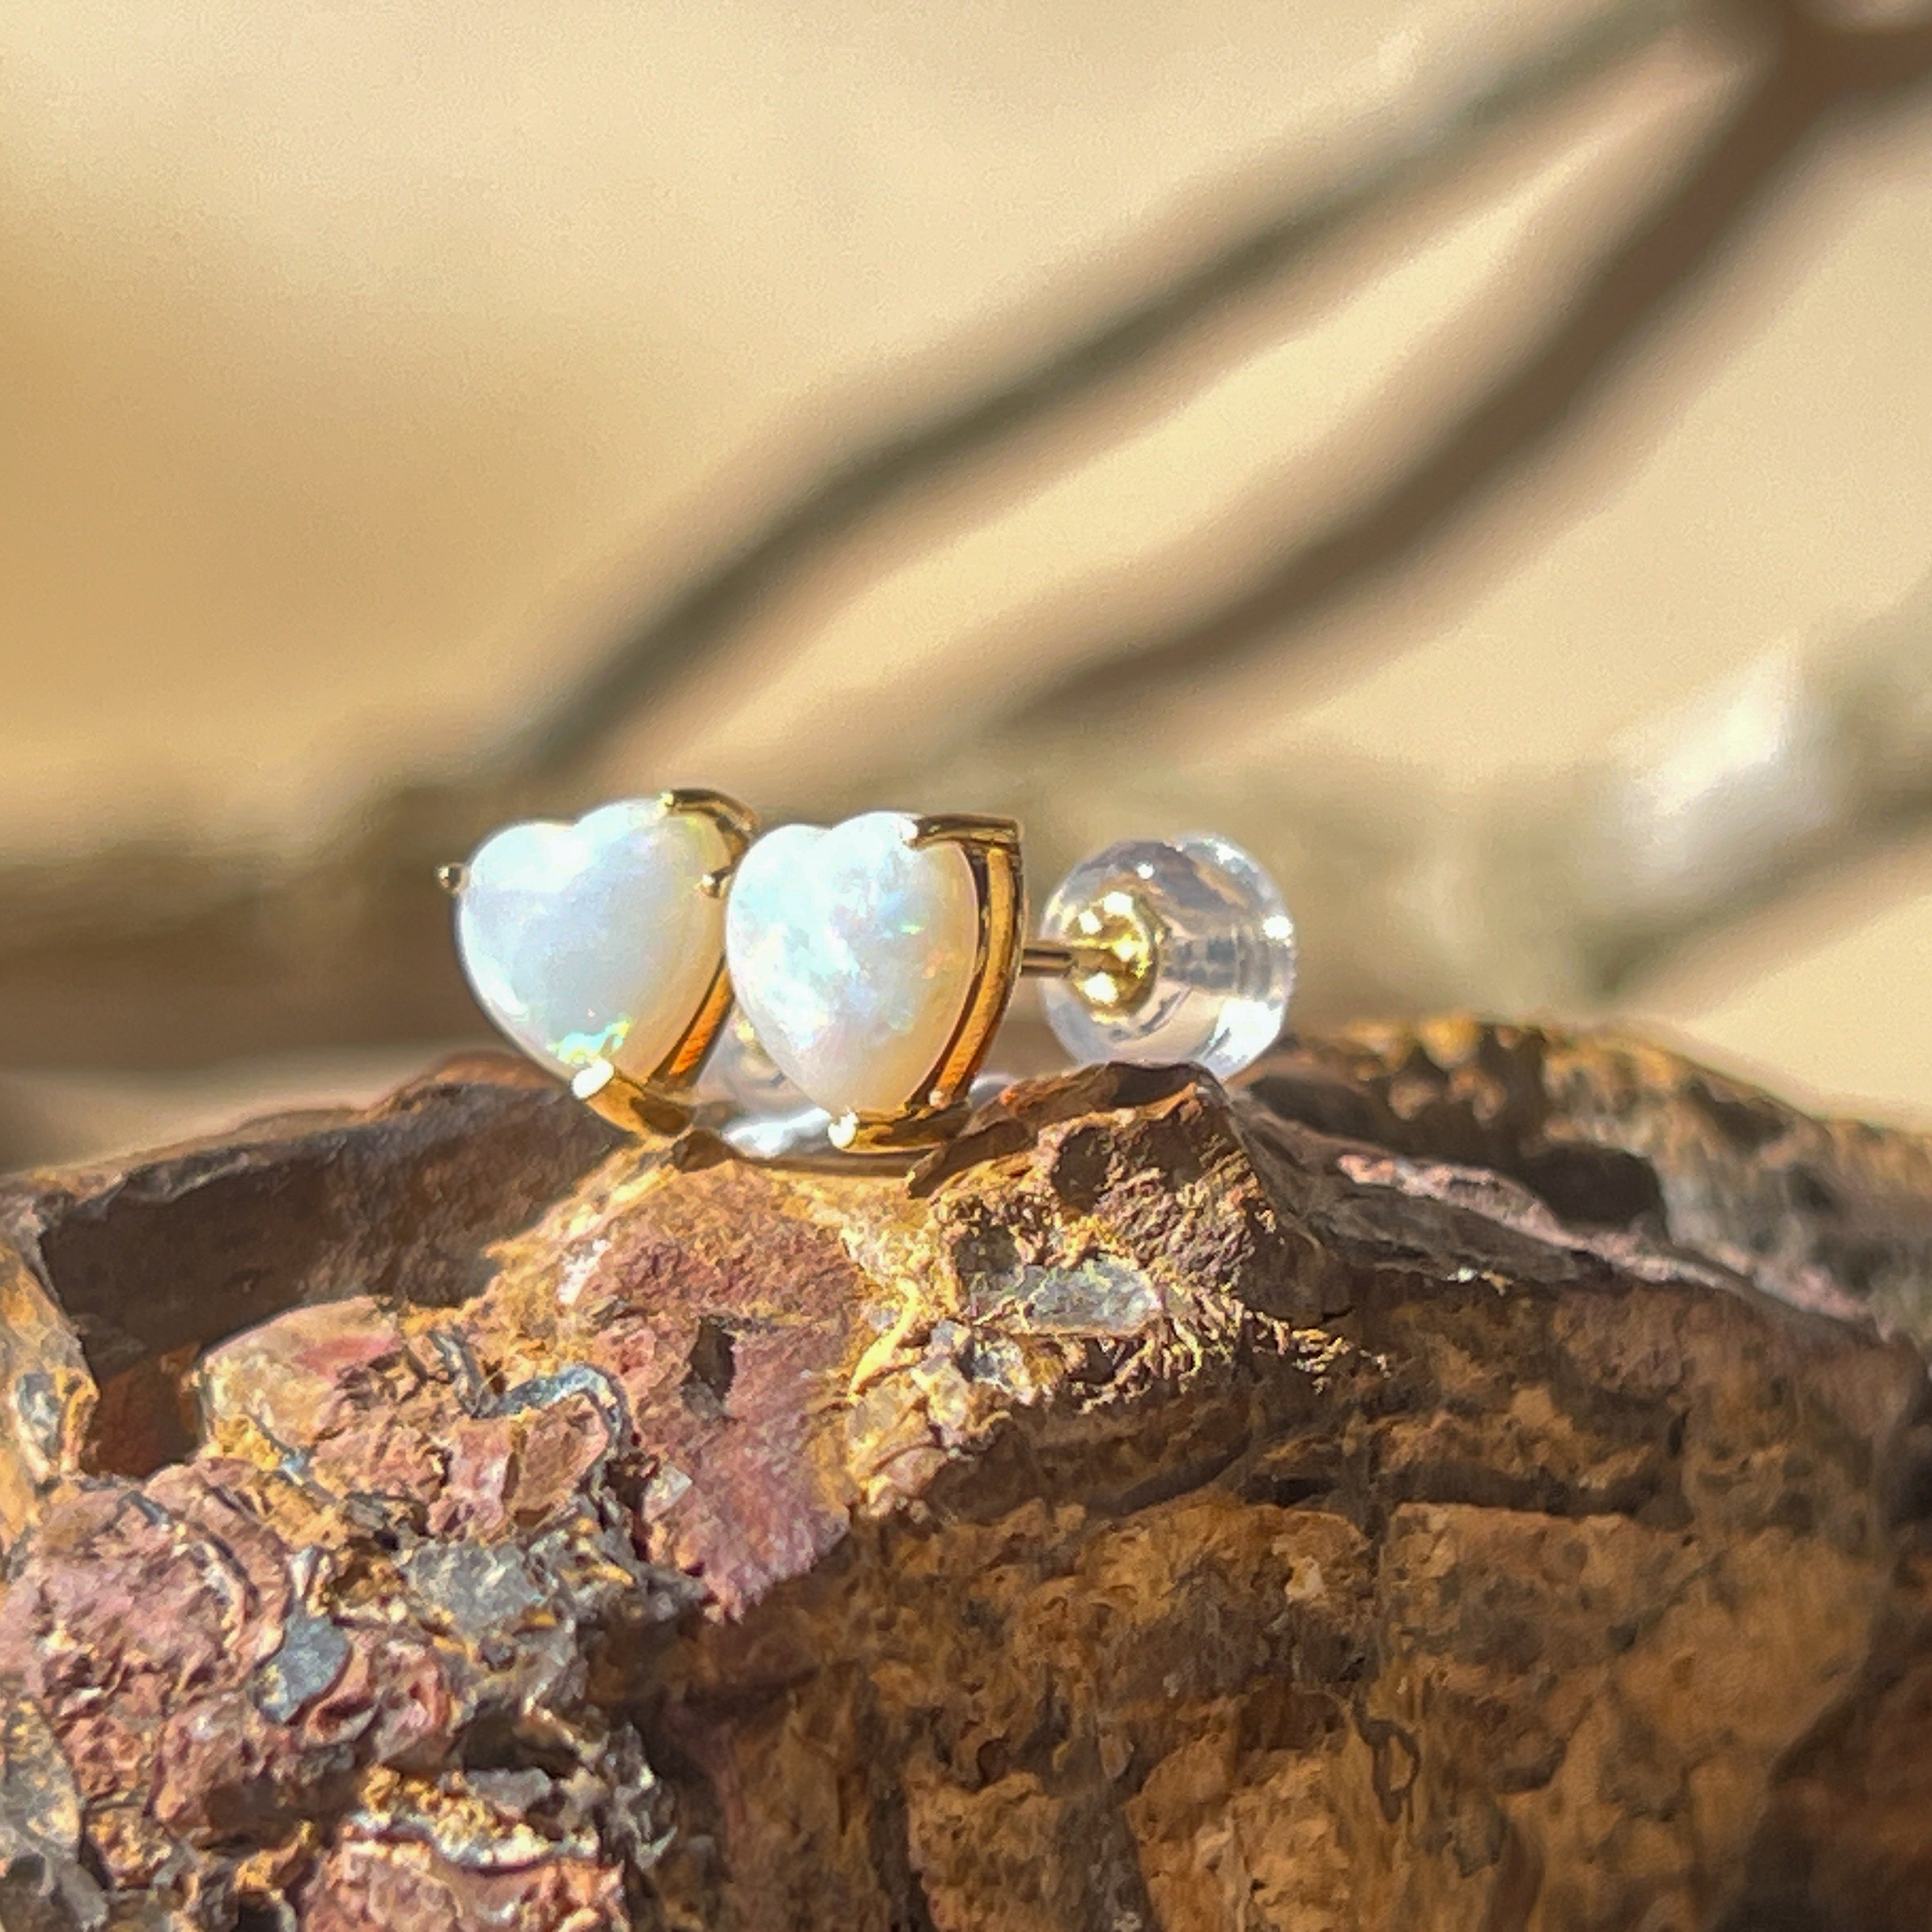 9kt Yellow Gold 6mm Heart shape Opal earrings studs - Masterpiece Jewellery Opal & Gems Sydney Australia | Online Shop